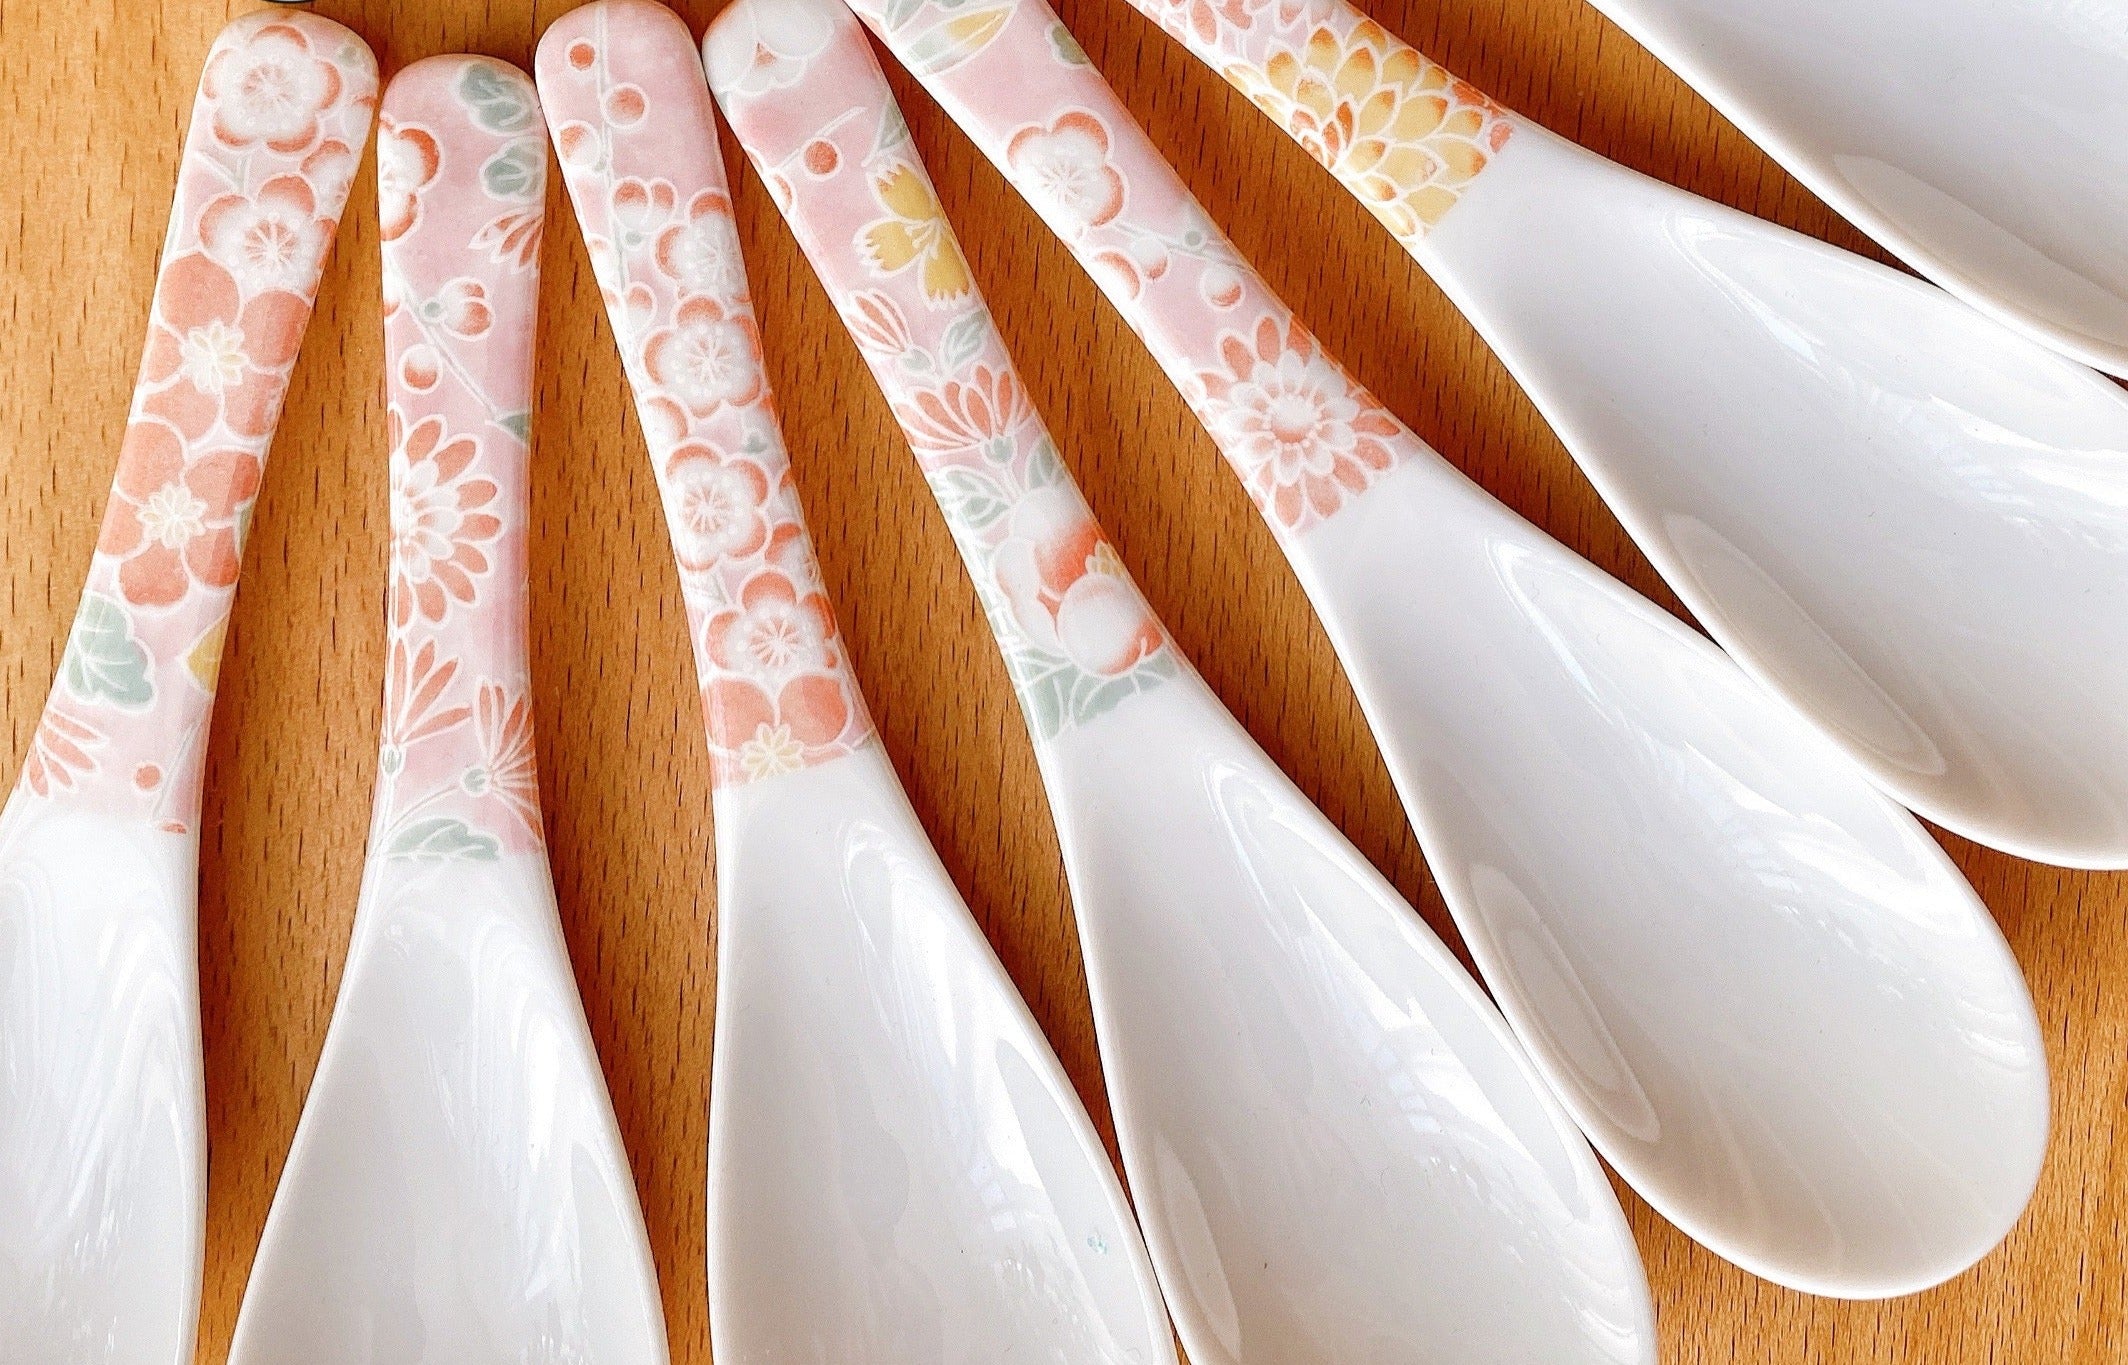 4 Piece Ise Katagami Kimono Dye Ceramic Soup Spoon